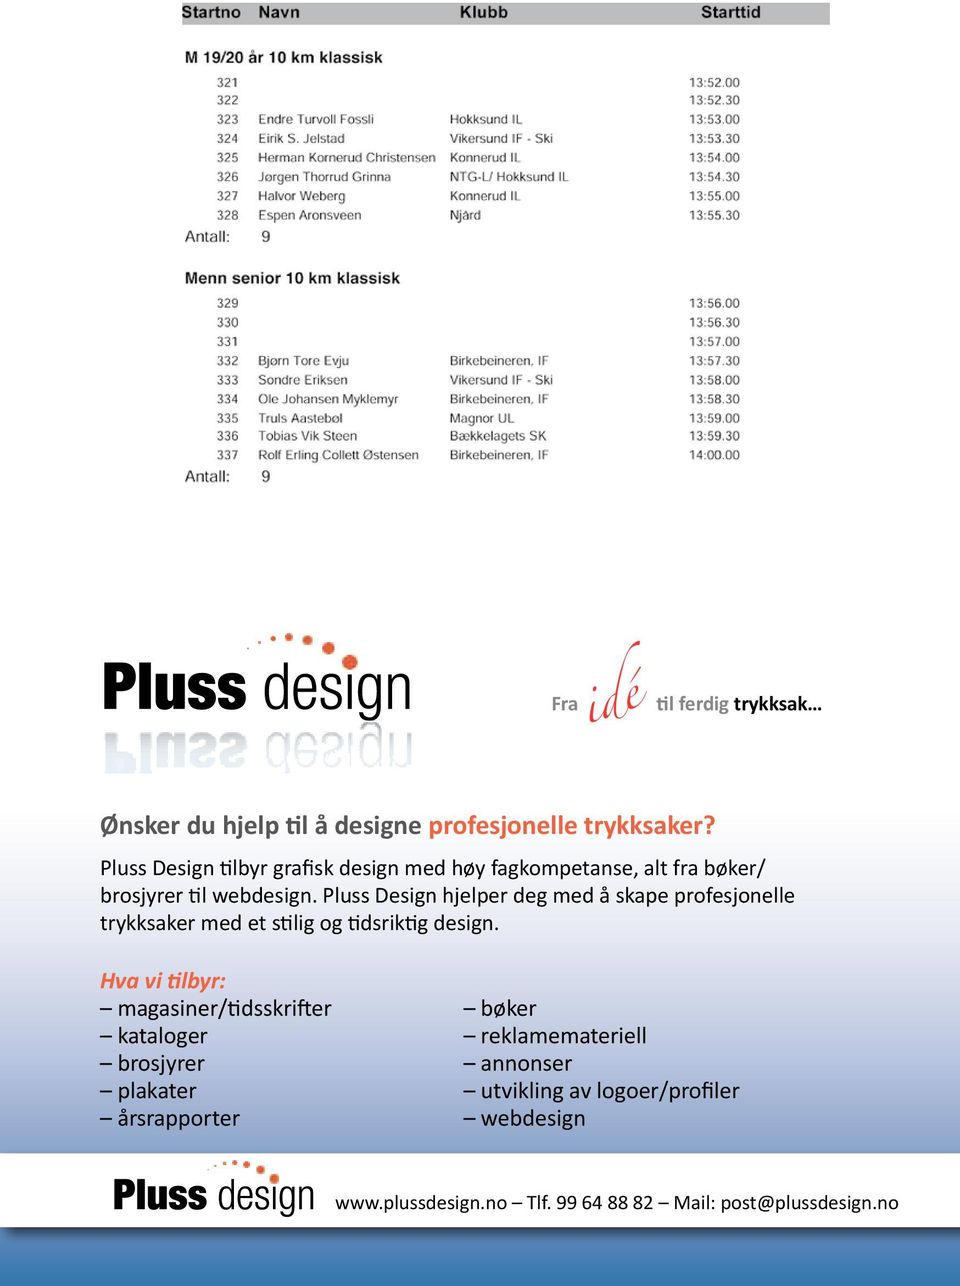 Pluss Design hjelper deg med å skape profesjonelle trykksaker med et stilig og tidsriktig design.